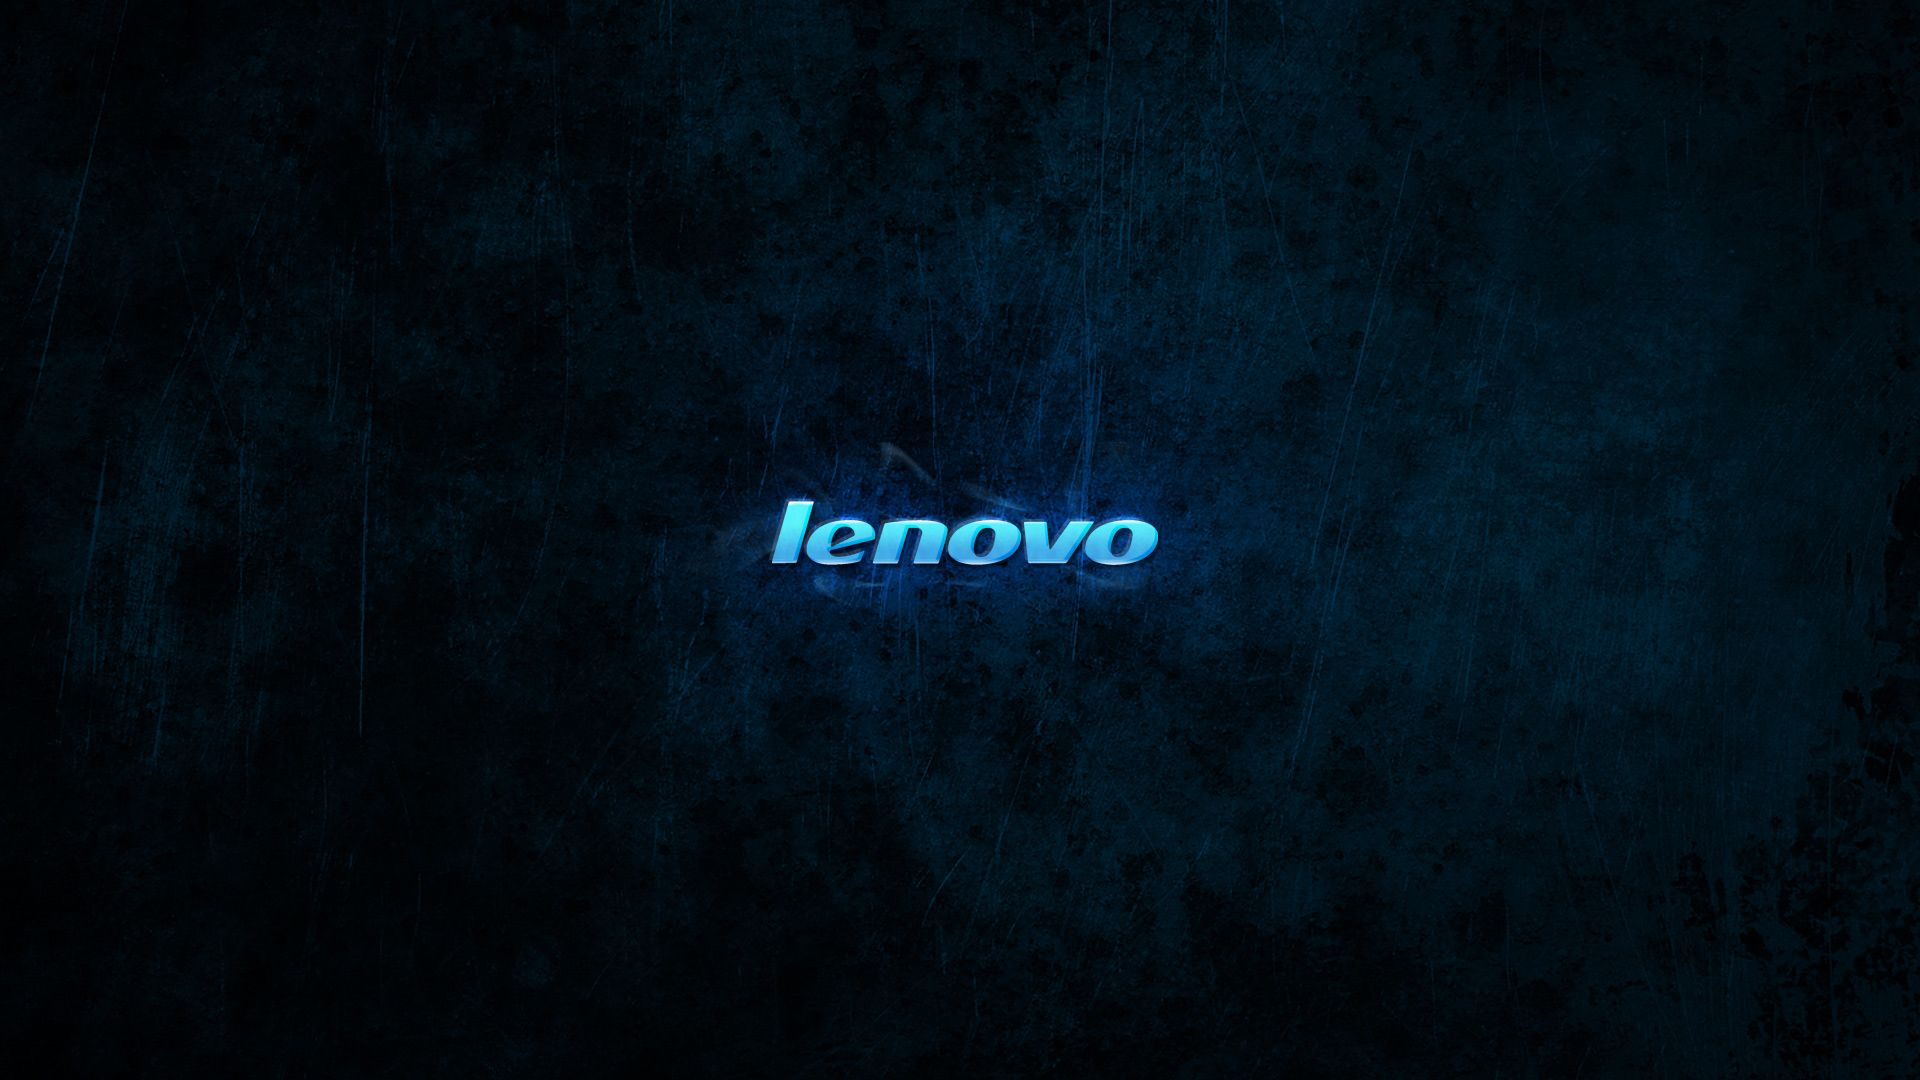 Lenovo Windows 7 Wallpapers Group 81